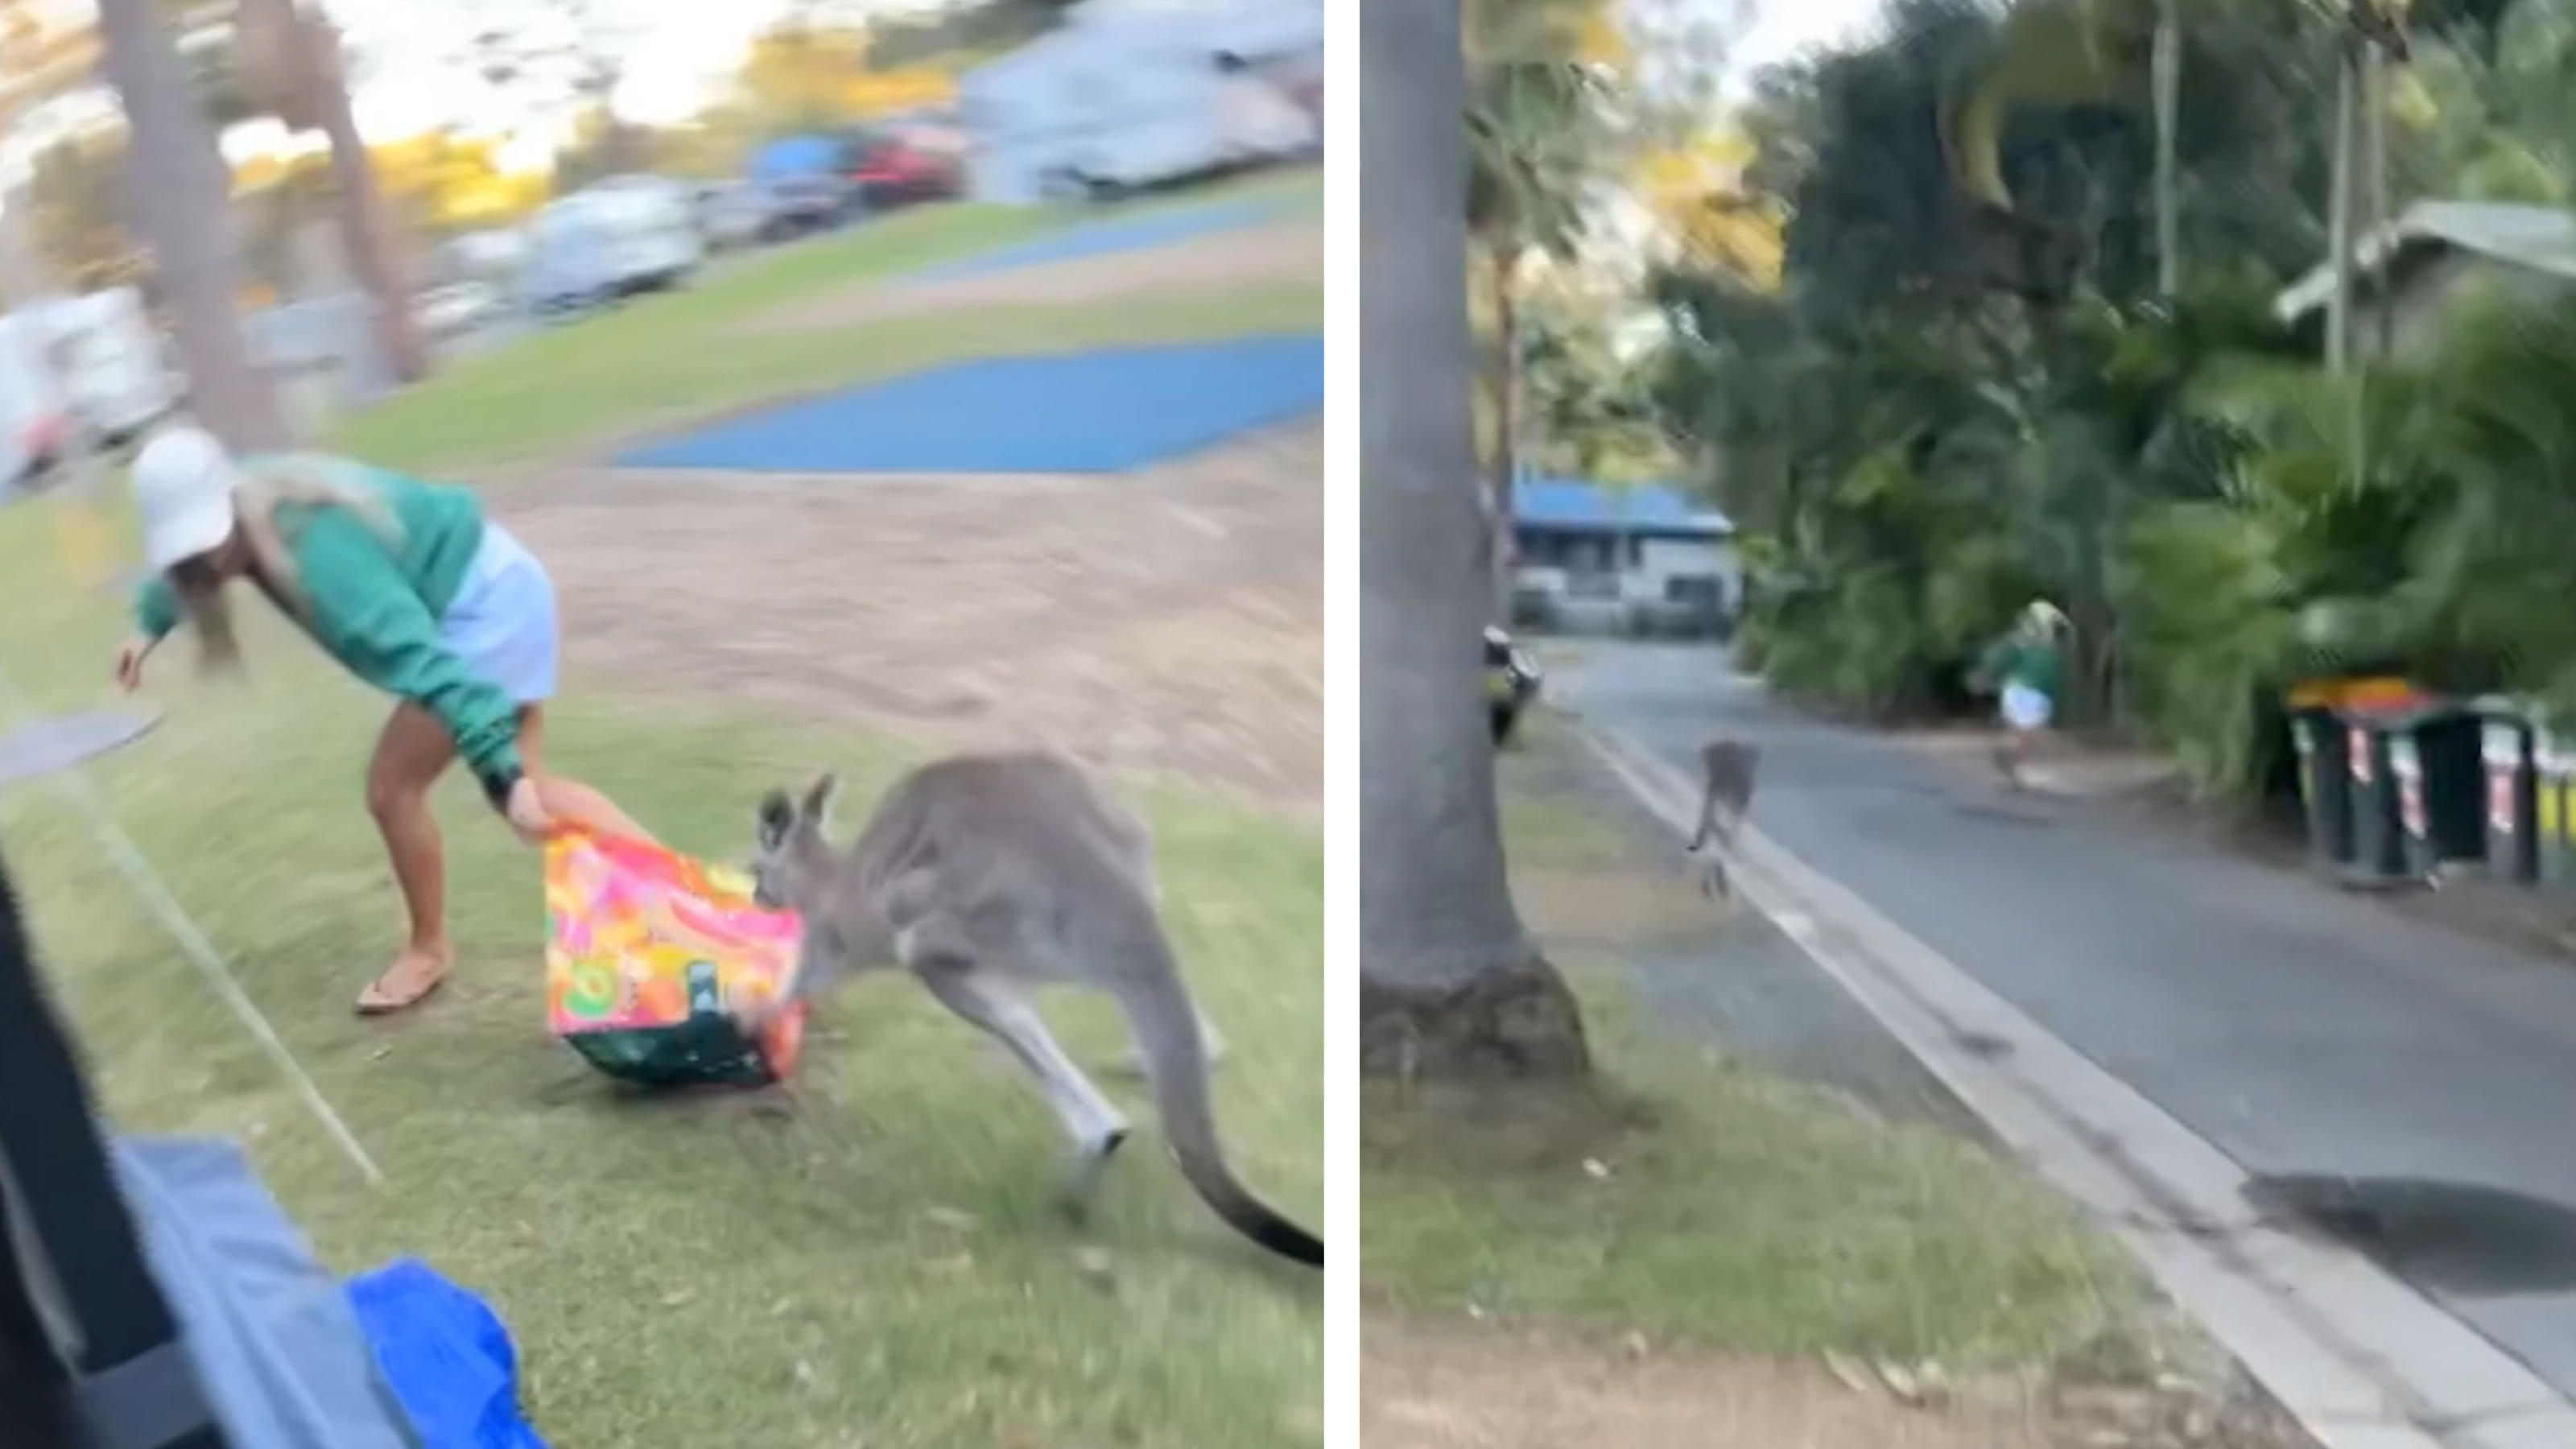 Skippy will doch nur Muffins! Känguru jagt Frau über Platz Beim Essen hört der Spaß bei ihm auf